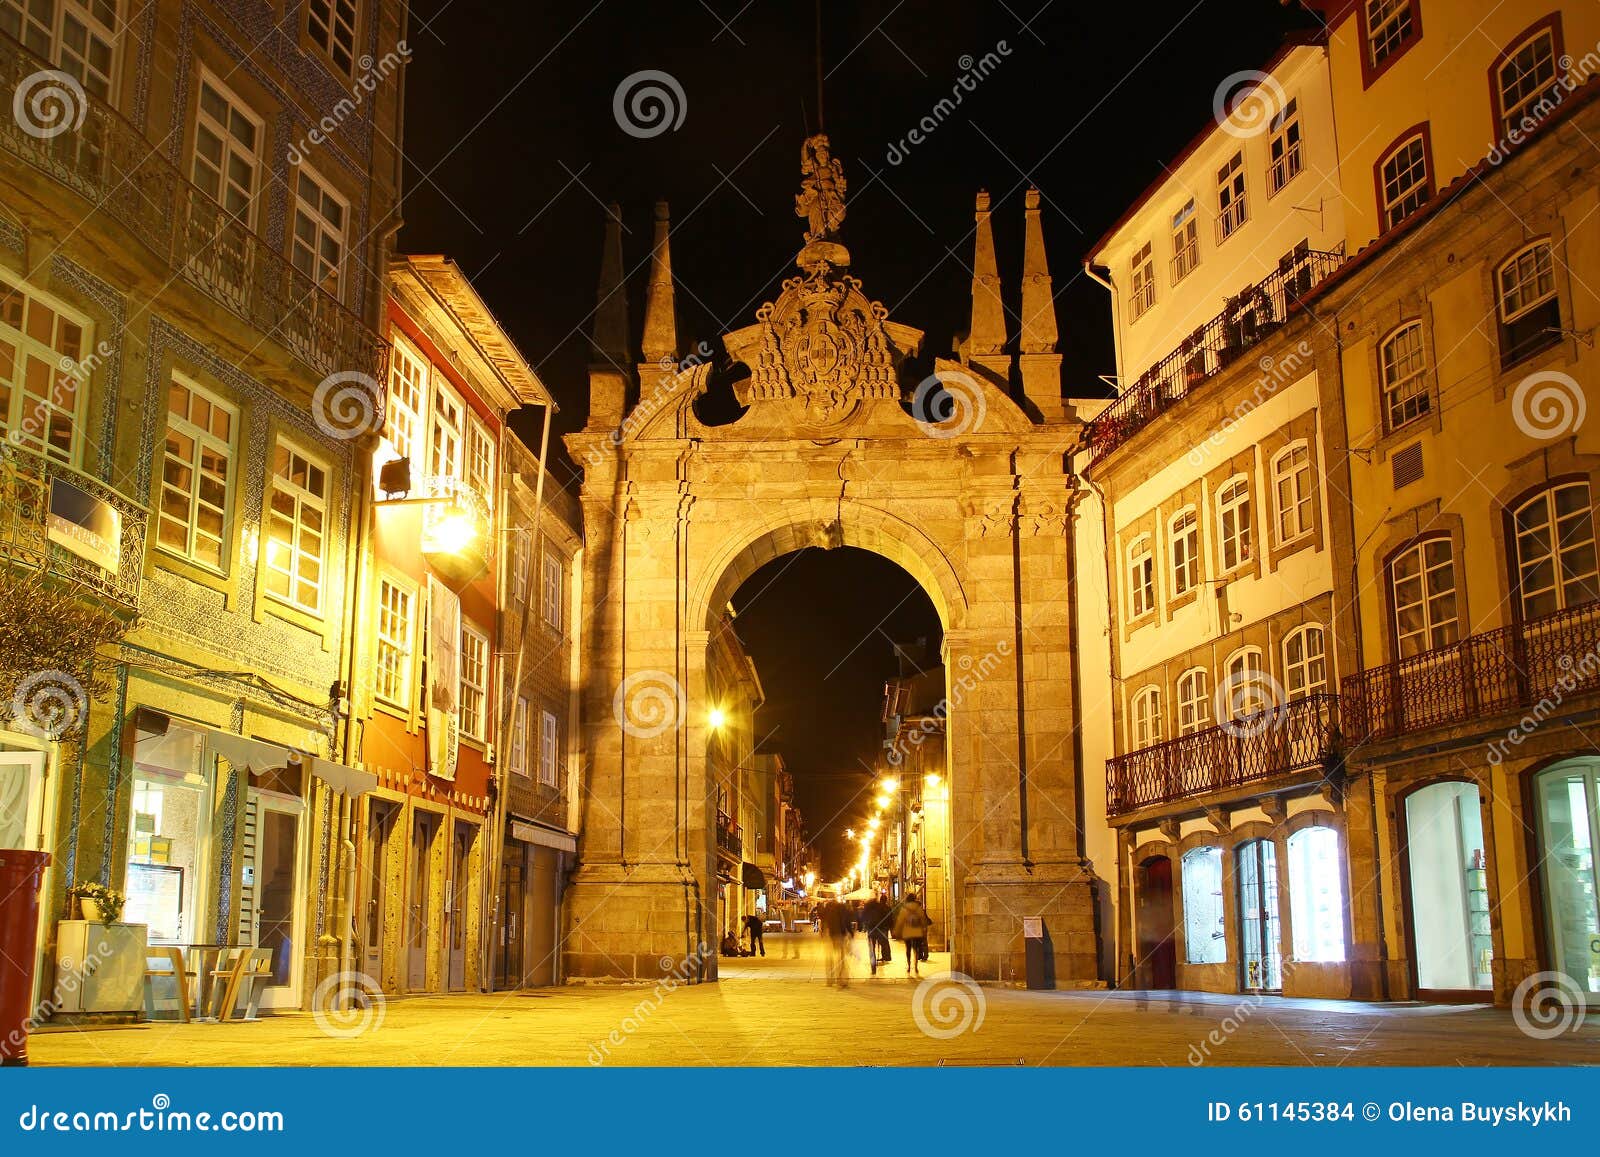 arch of the new gate (arco da porta nova), braga, portugal